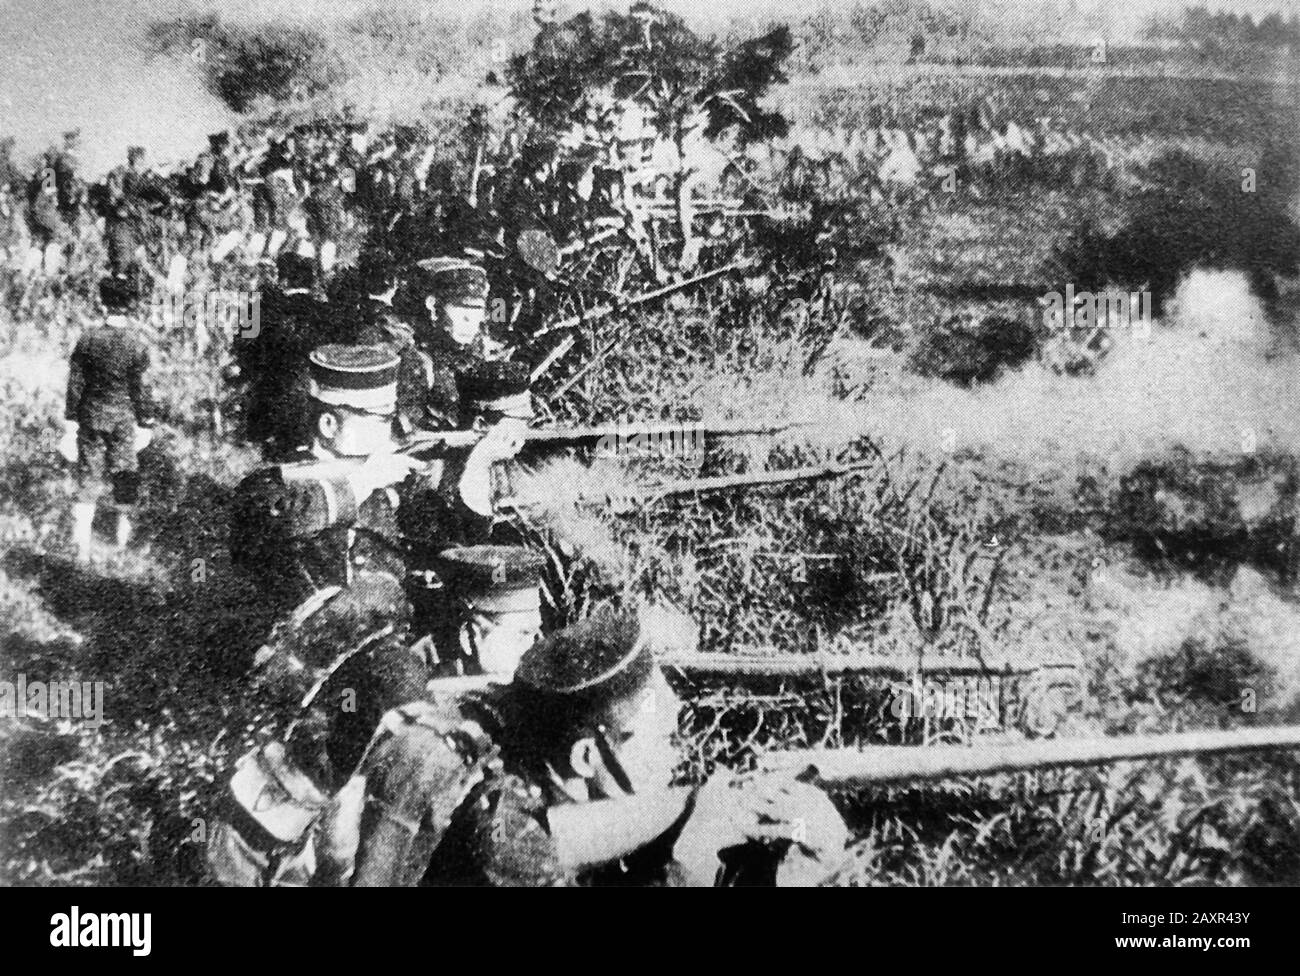 Première guerre sino-japonaise 1894/95: Les soldats de l'armée impériale japonaise sont en train de tirer leurs fusils Murata de type 22. 1894 Banque D'Images